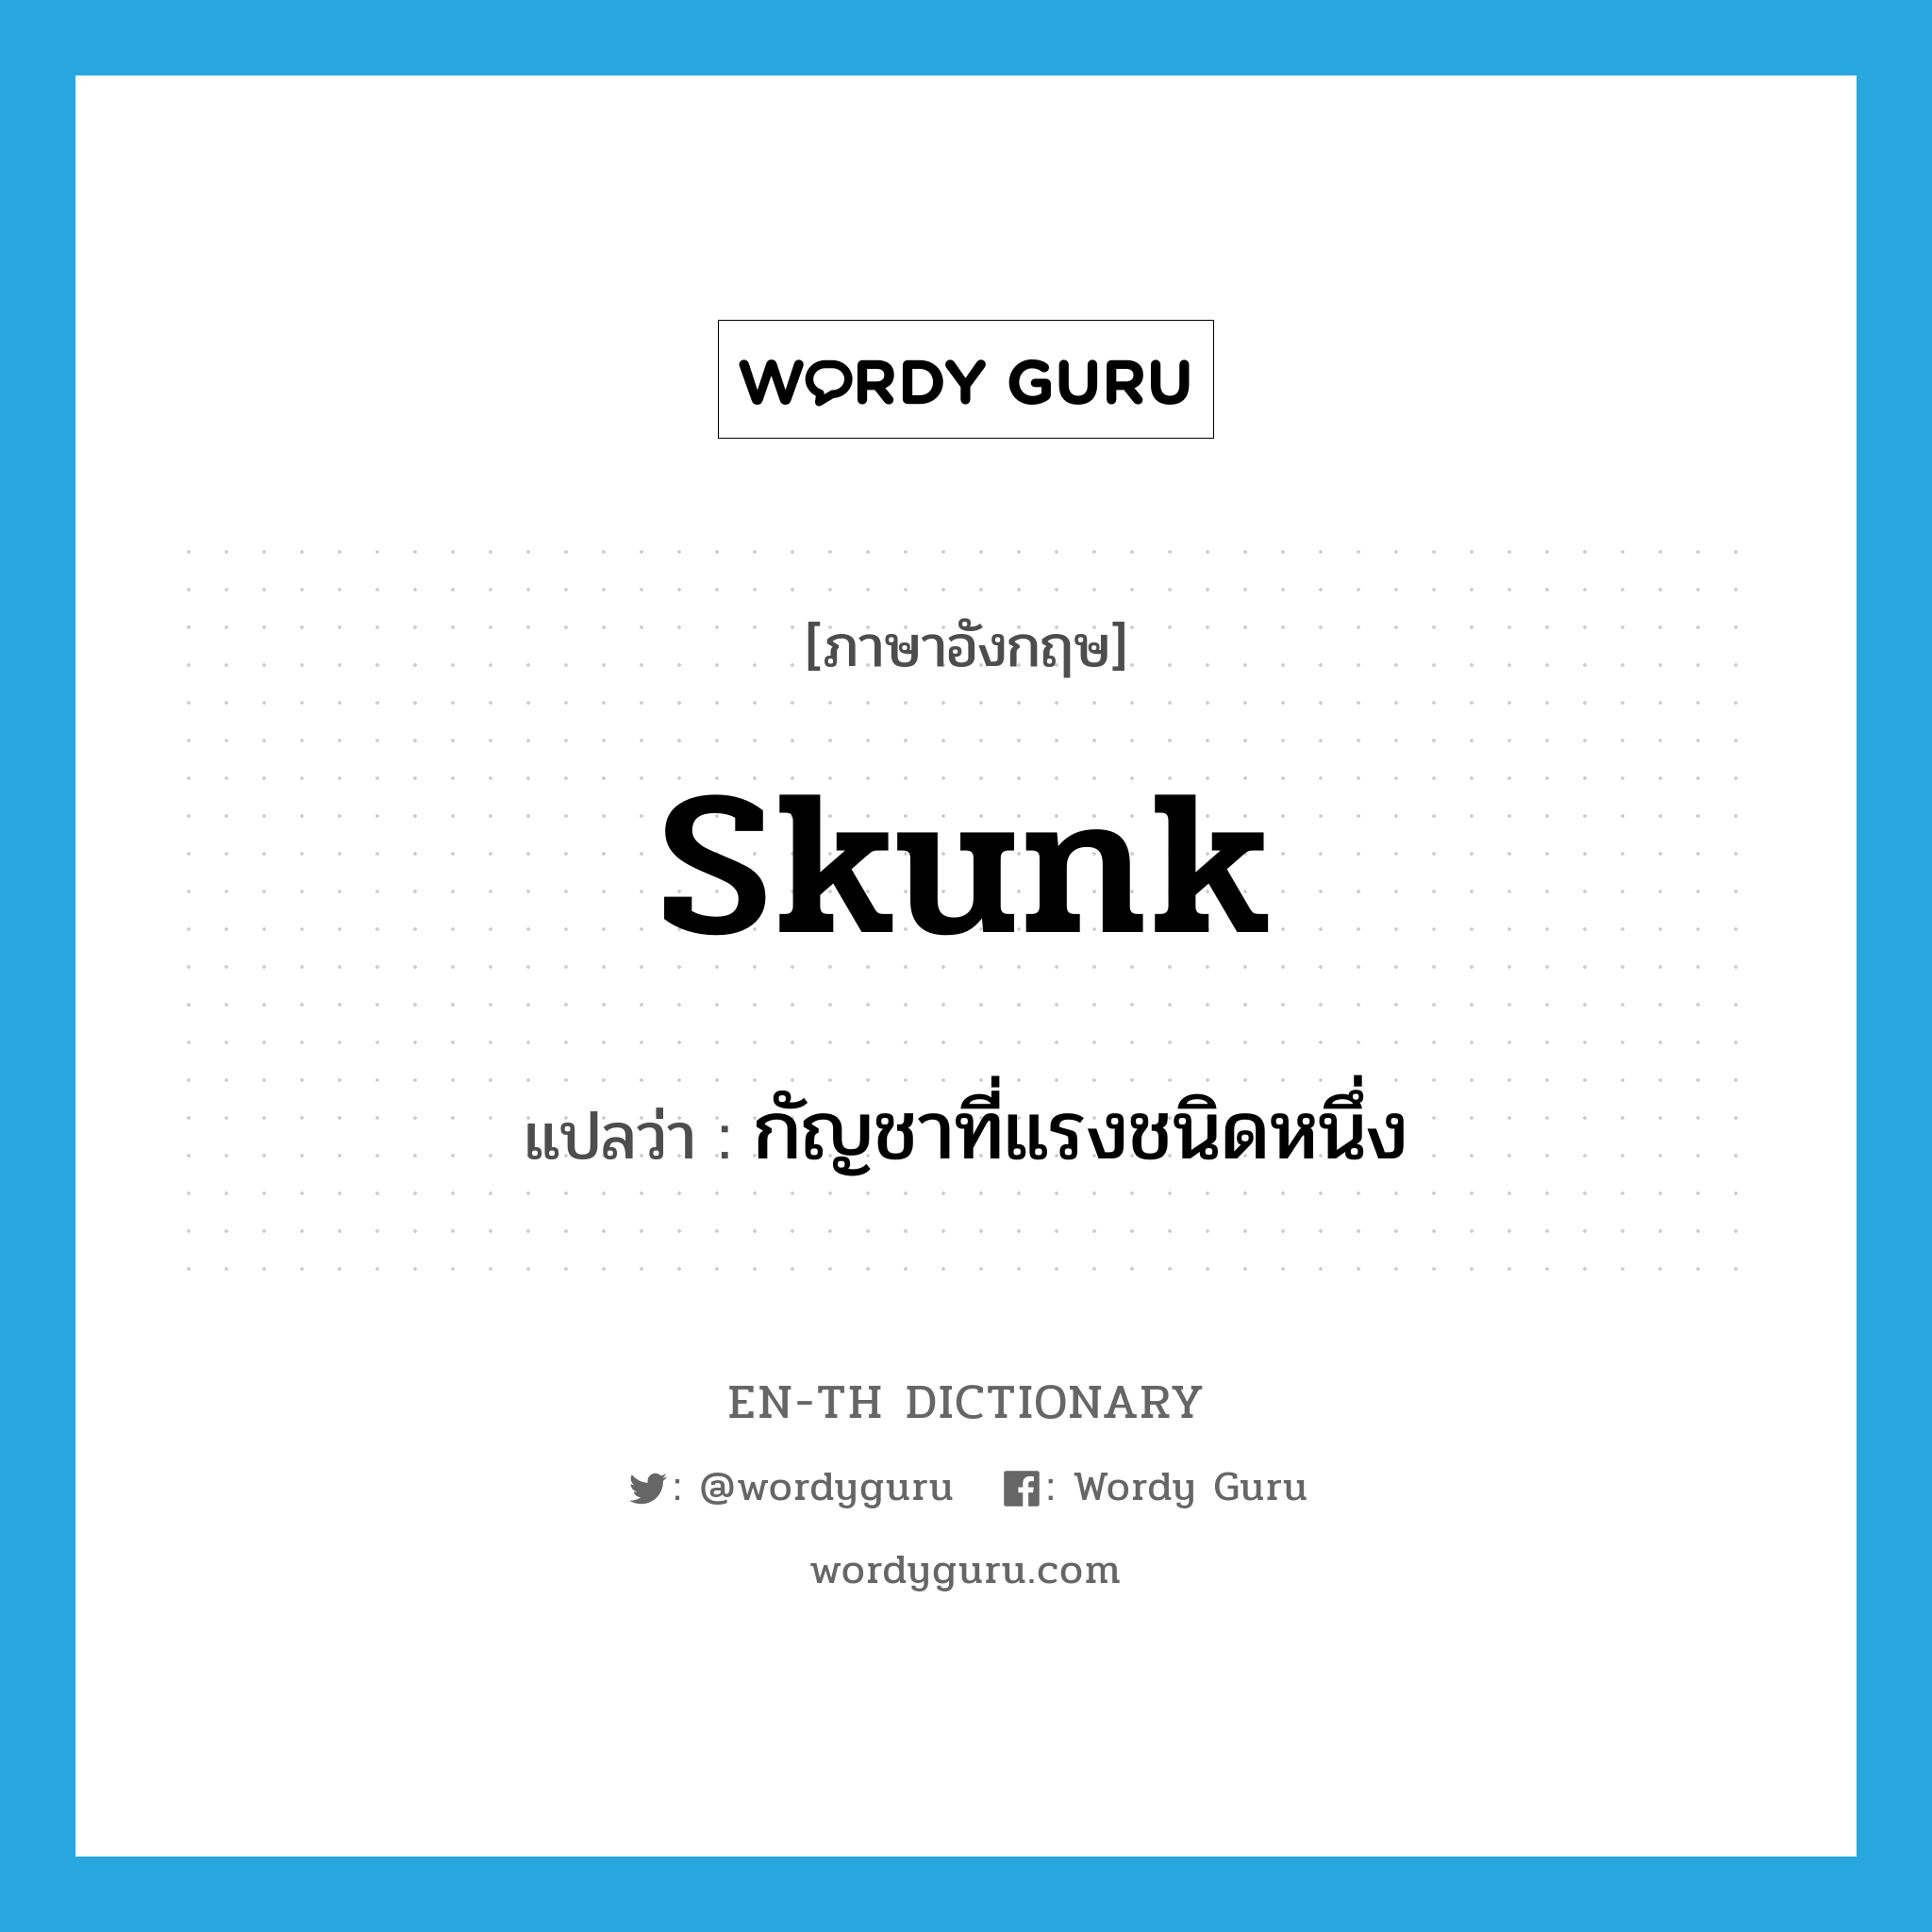 กัญชาที่แรงชนิดหนึ่ง ภาษาอังกฤษ?, คำศัพท์ภาษาอังกฤษ กัญชาที่แรงชนิดหนึ่ง แปลว่า skunk ประเภท SL หมวด SL